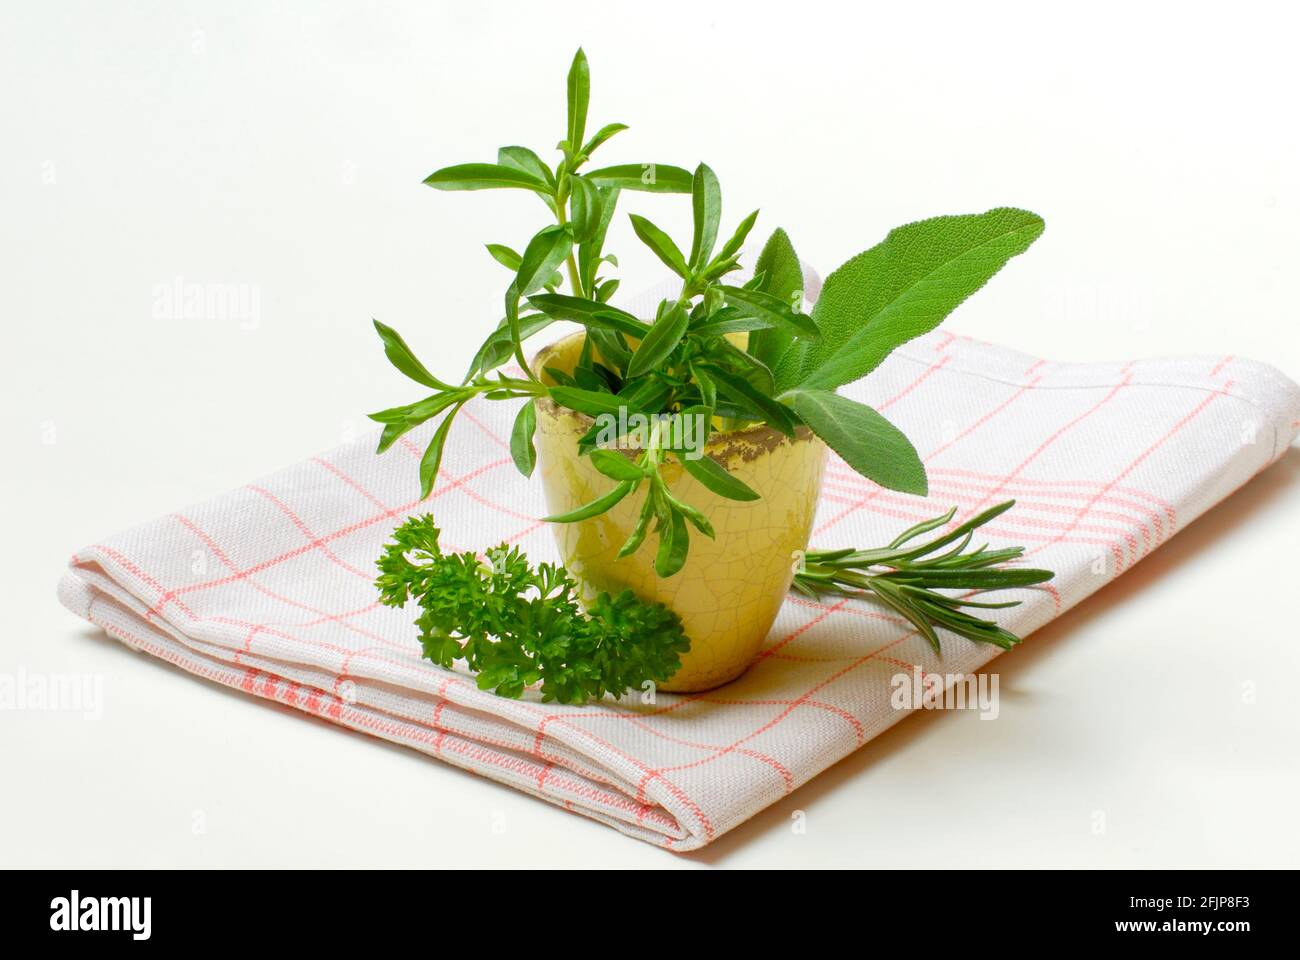 Herzhaft, herzhaft, herzhaft (Satureja hortensis) Petersilie, Rosmarin, Salbei Stockfoto